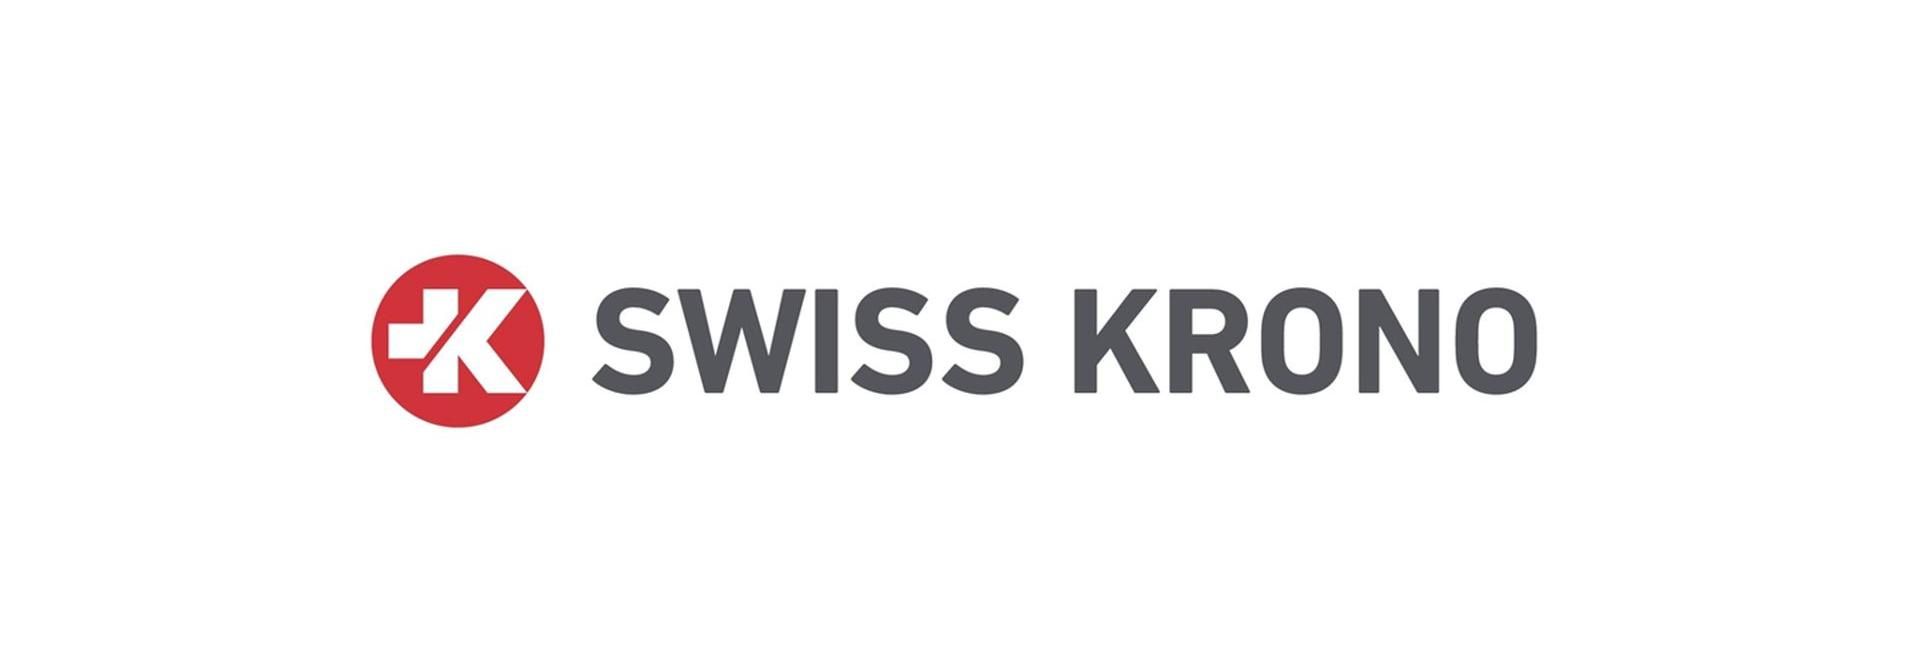 A Swiss Krono kapacitásbővítő beruházást indít Vásárosnaményben